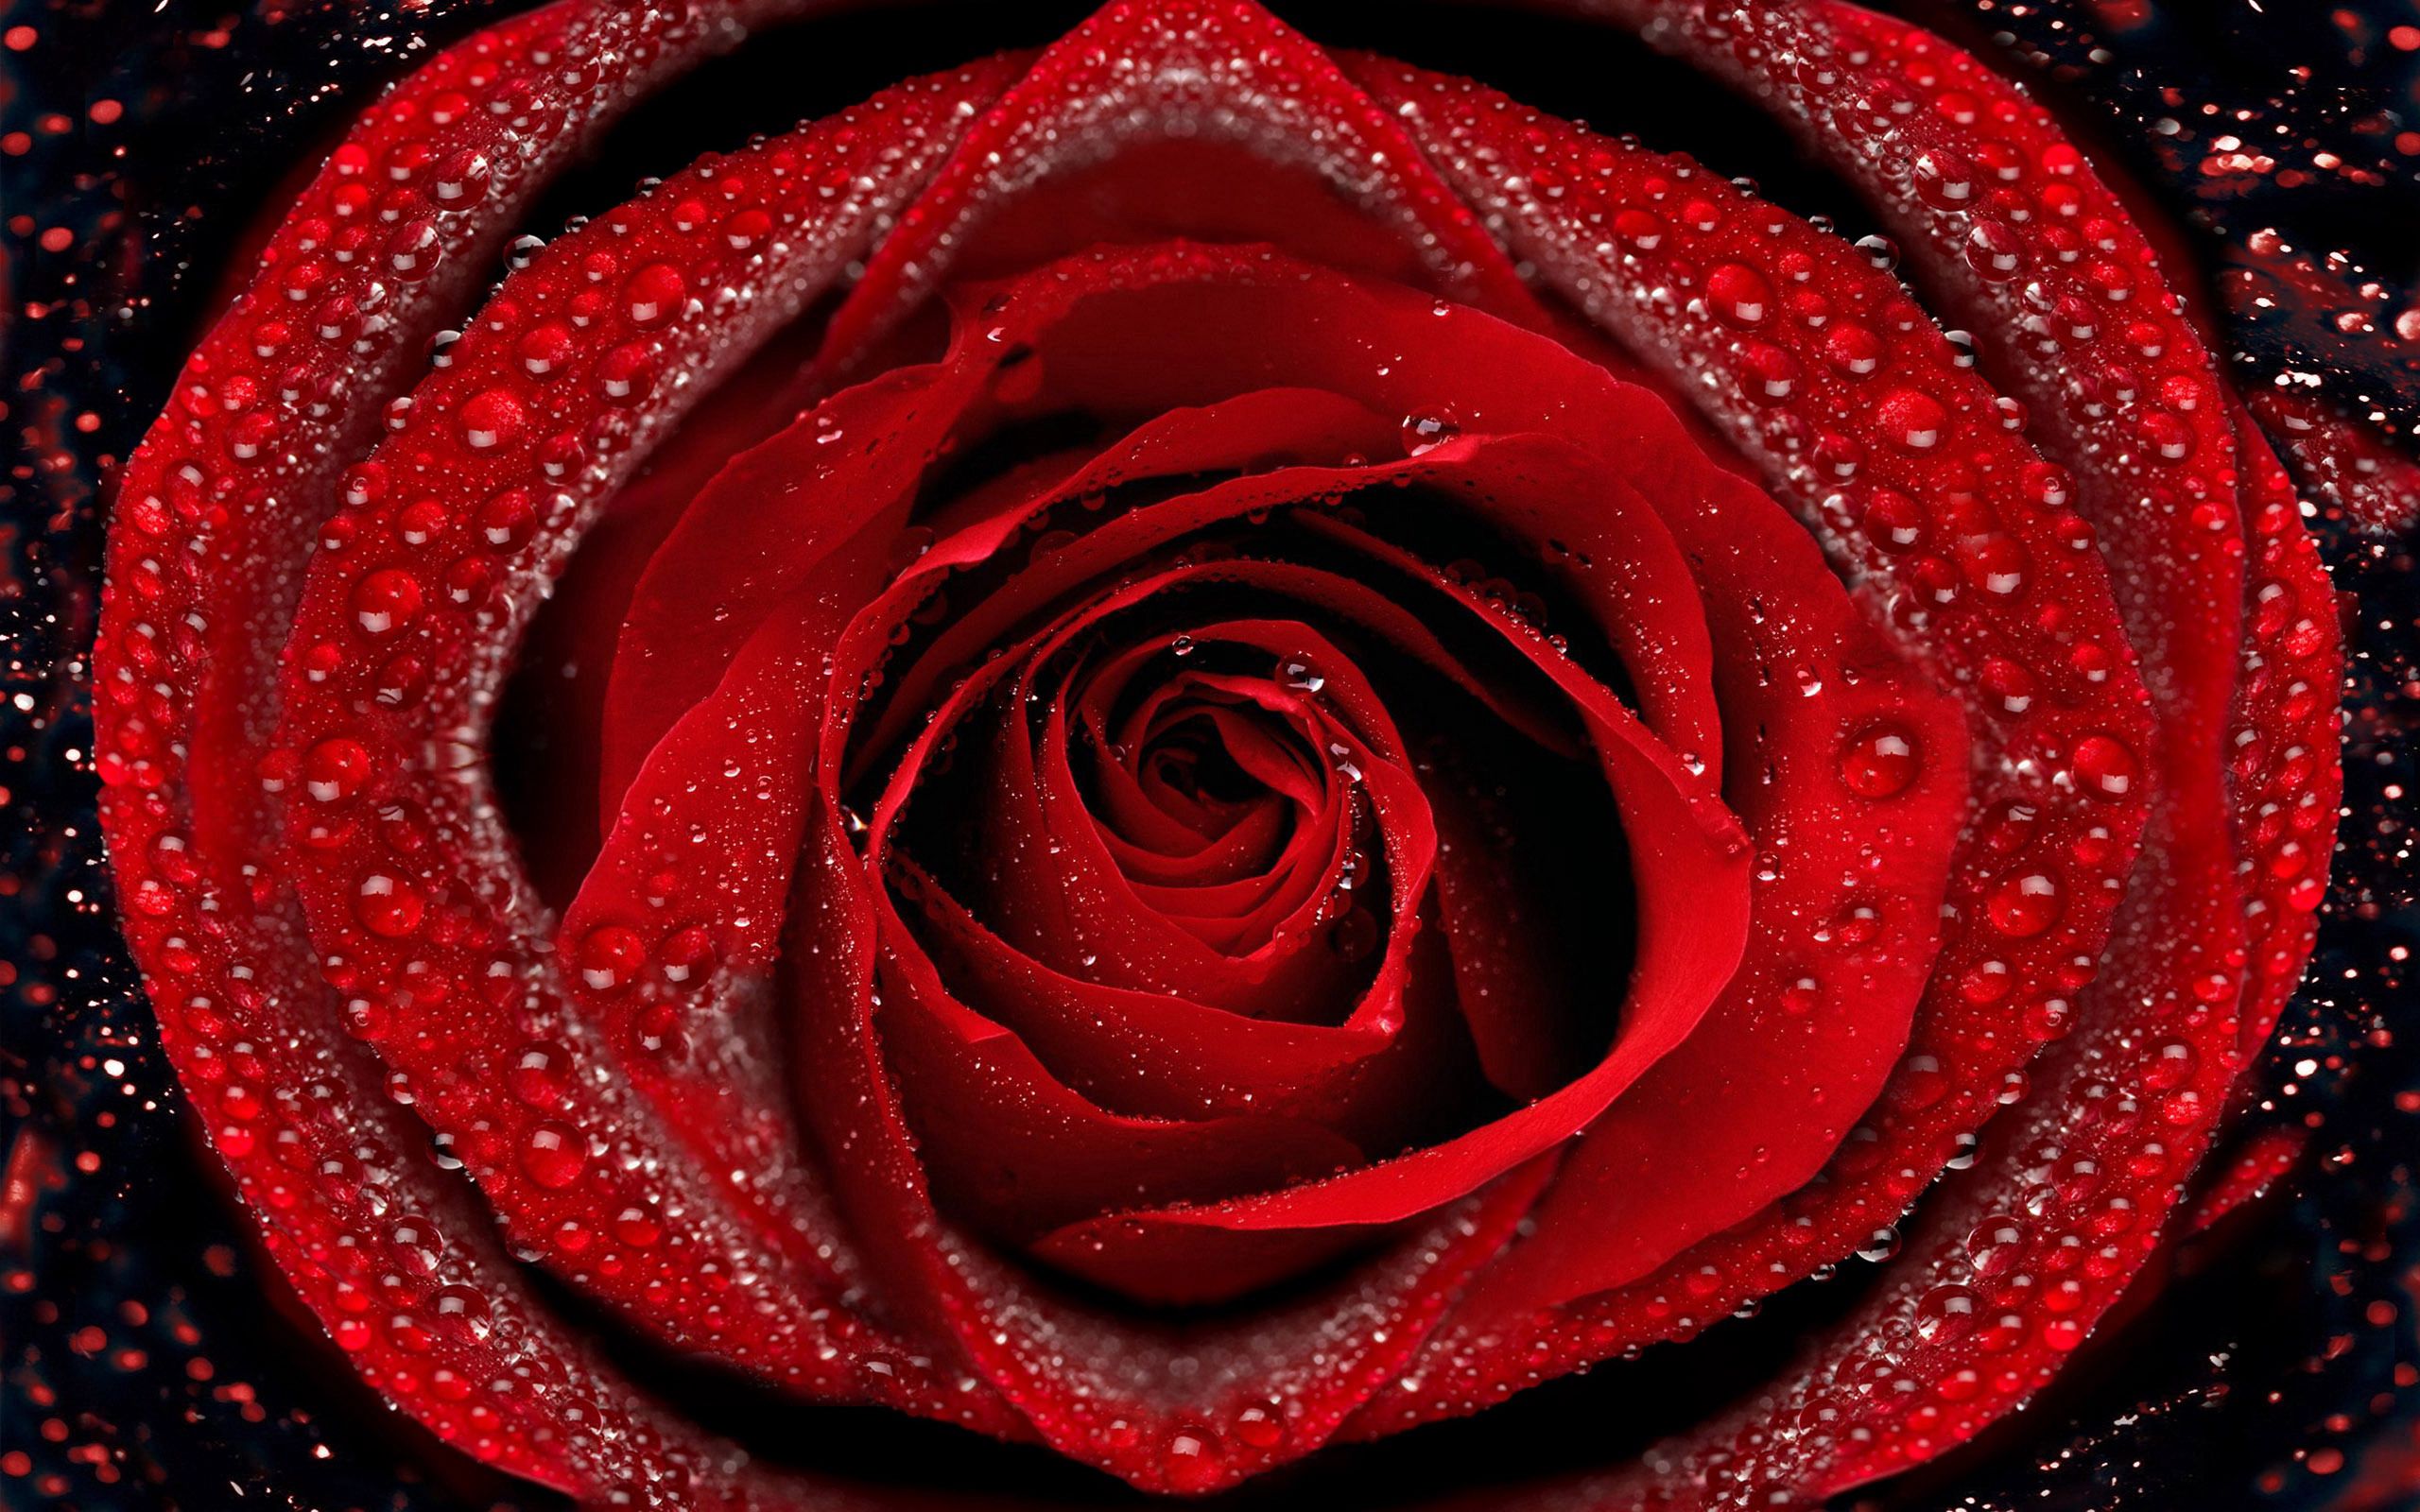 rose flower, rose, petals, drops, macro, dew